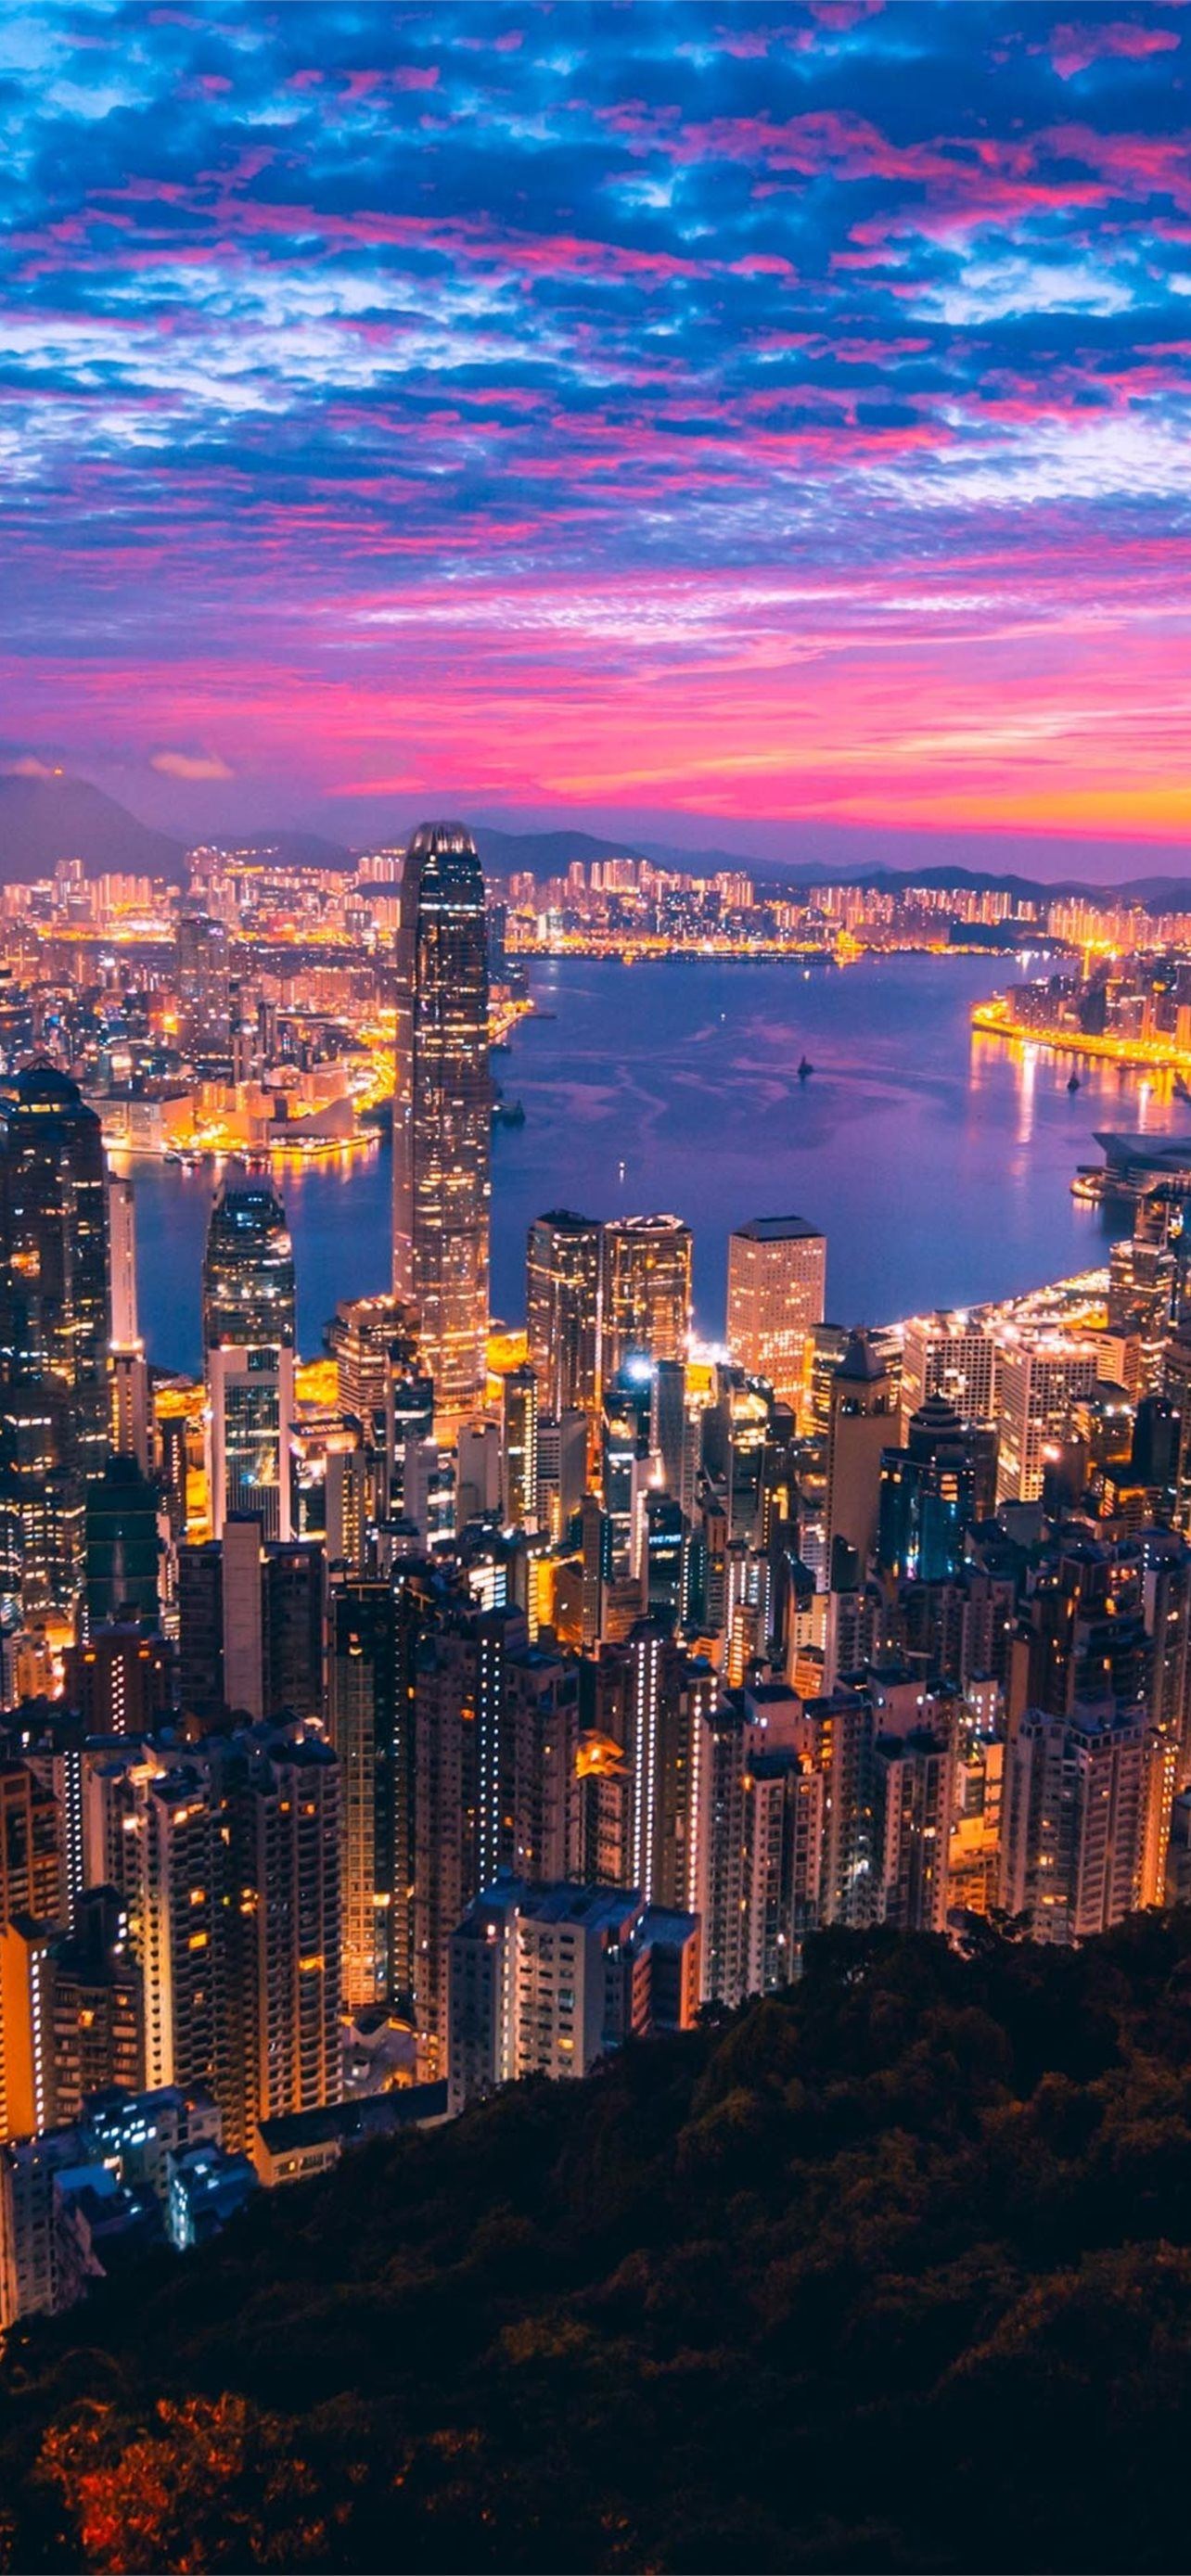 Khám phá Hong Kong với Samsung iPhone của bạn! Đắm mình trong vẻ đẹp của thành phố từ từng hạt cát đến những tòa nhà cao tầng rực rỡ sáng giá. Hình ảnh này sẽ đưa bạn đến những góc phố nổi tiếng của Hong Kong một cách chân thực.